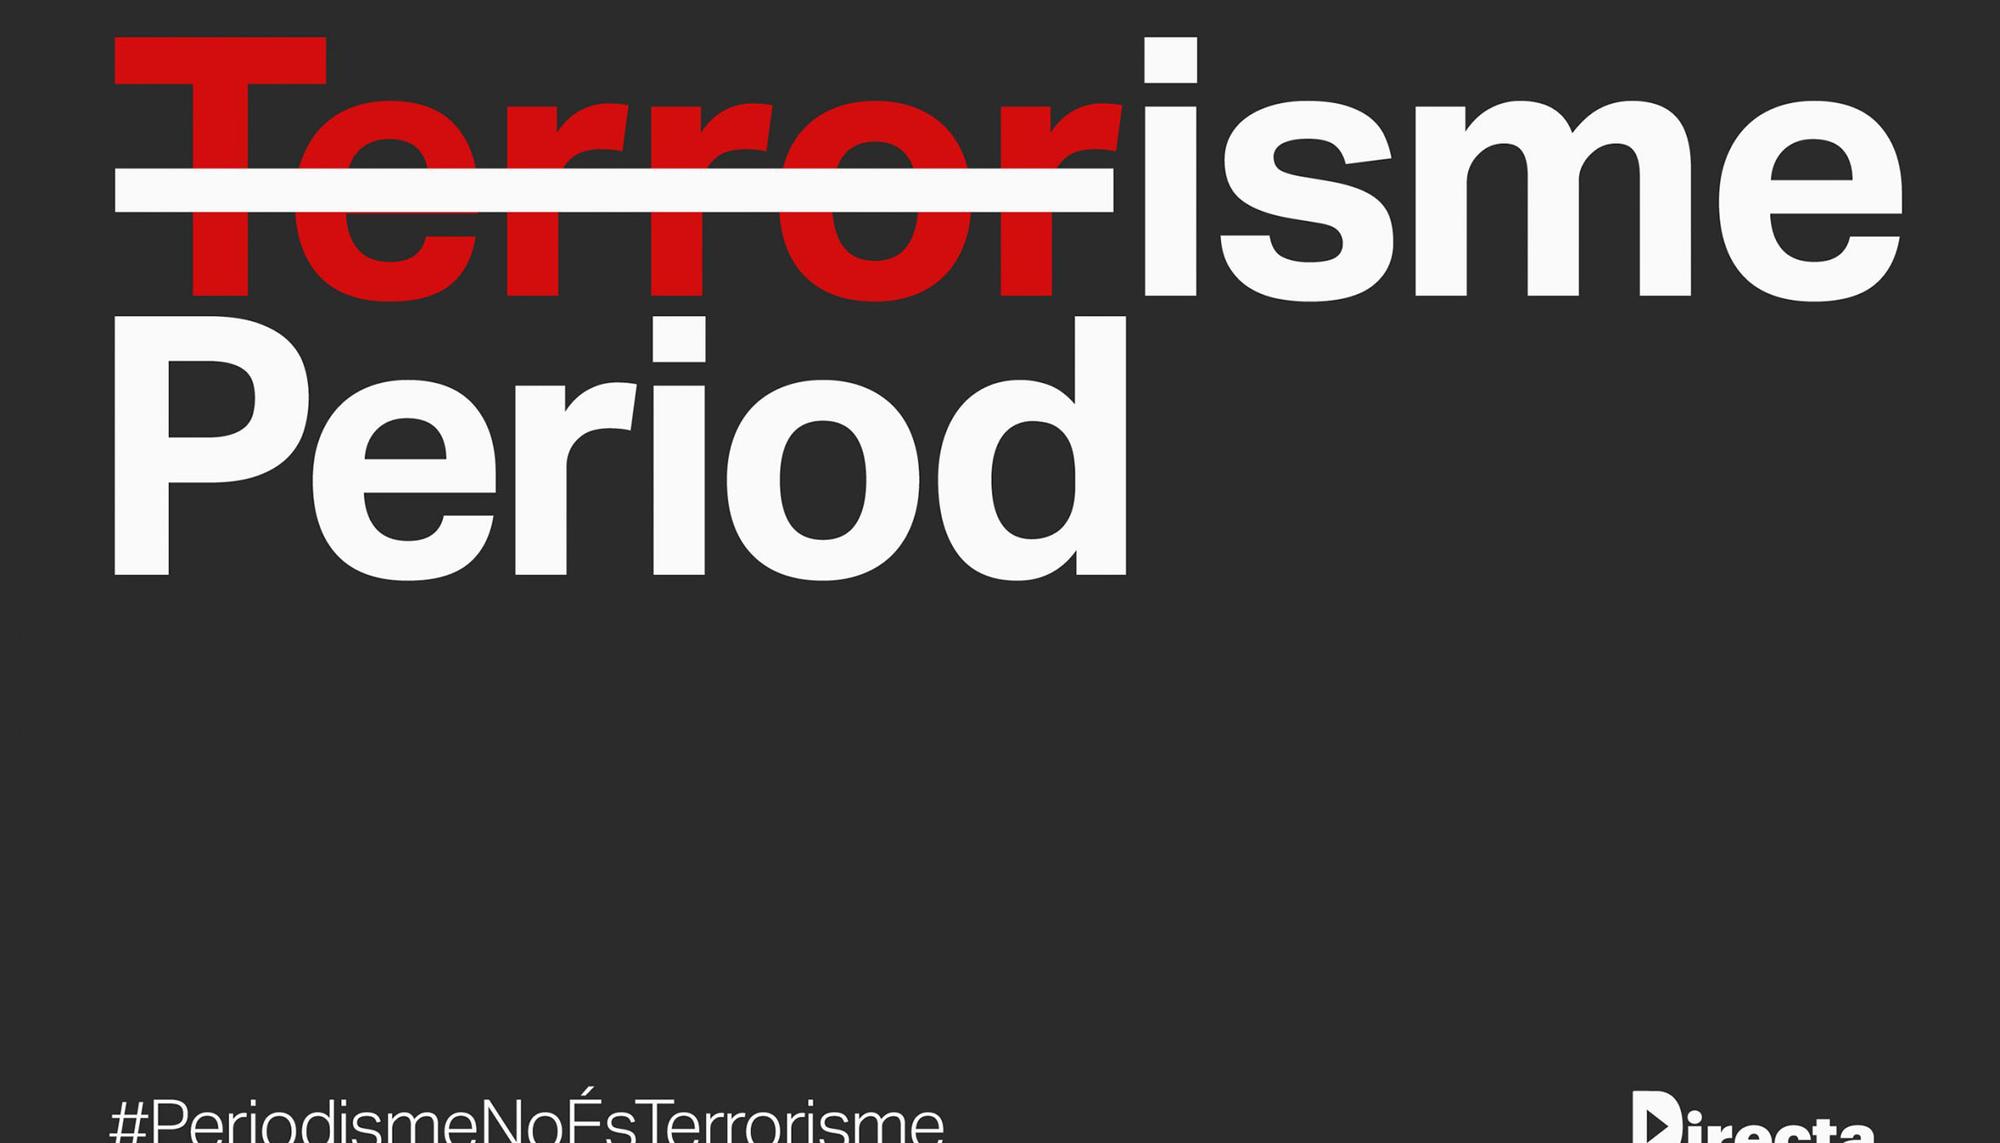 Periodismo no es terrorismo La Directa